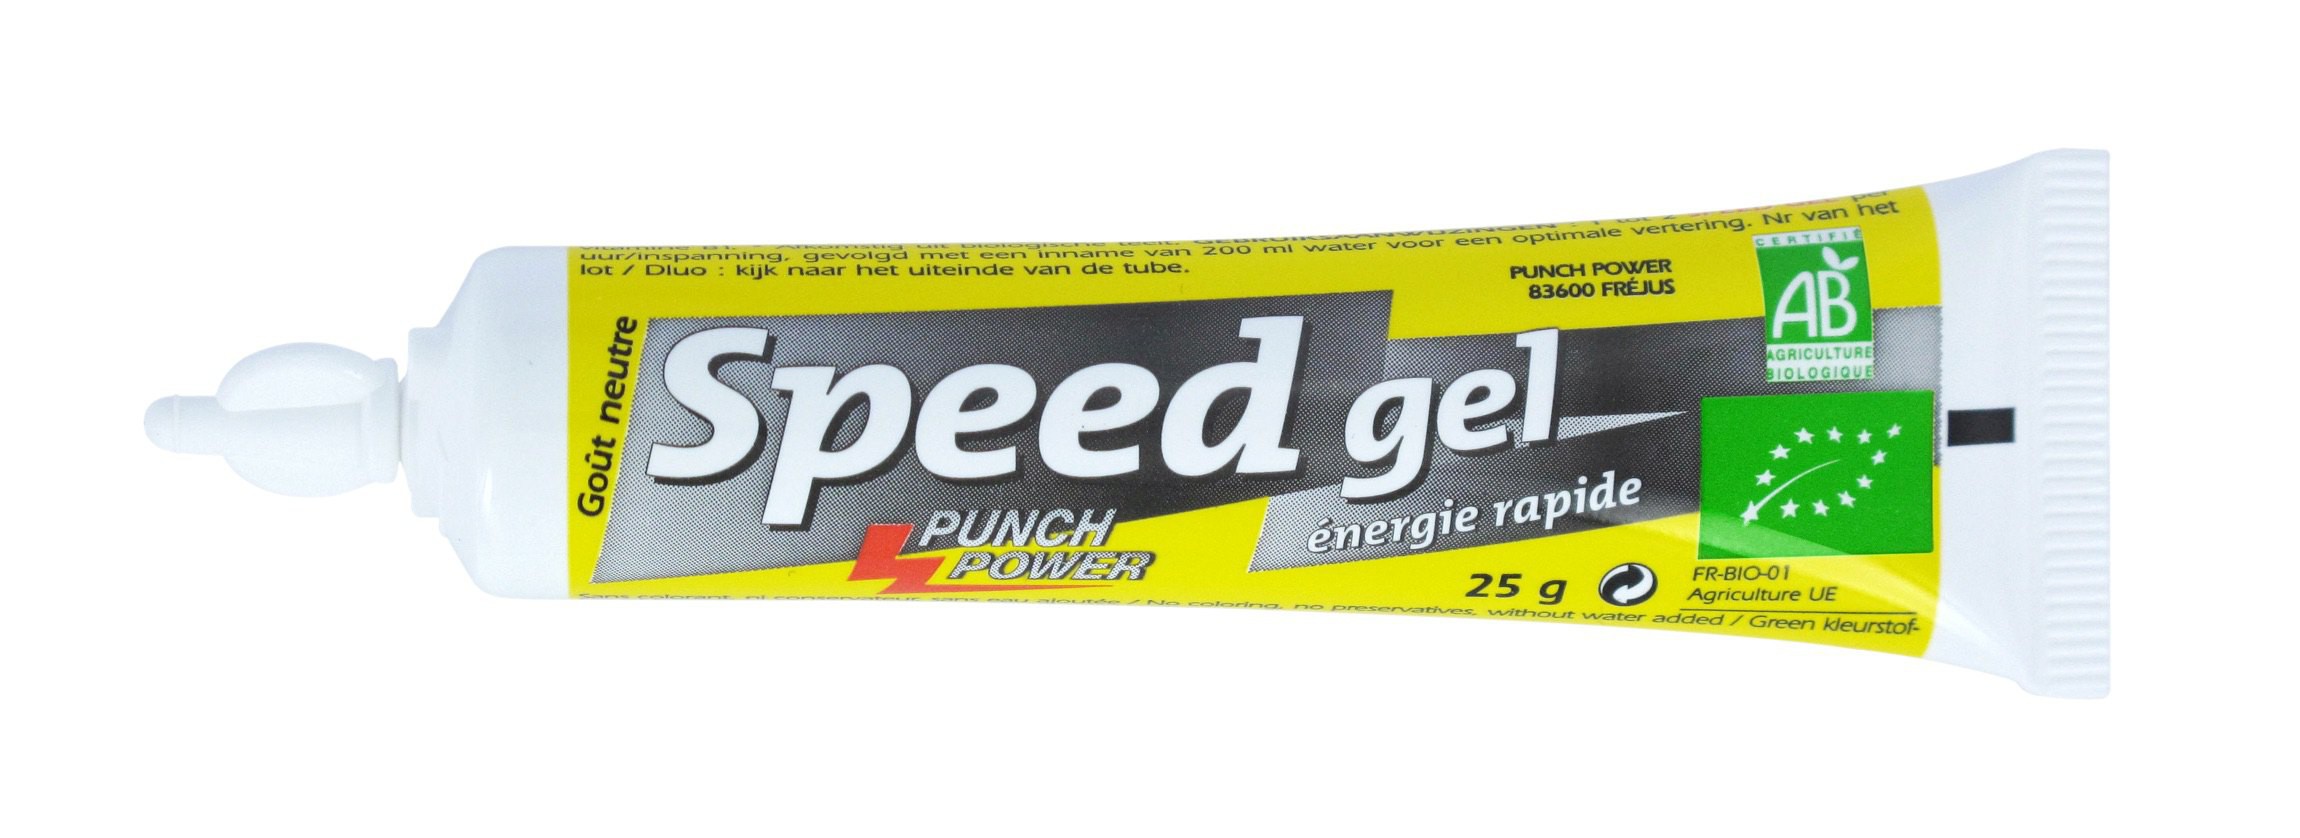 Punch Power - Bio SpeedGel